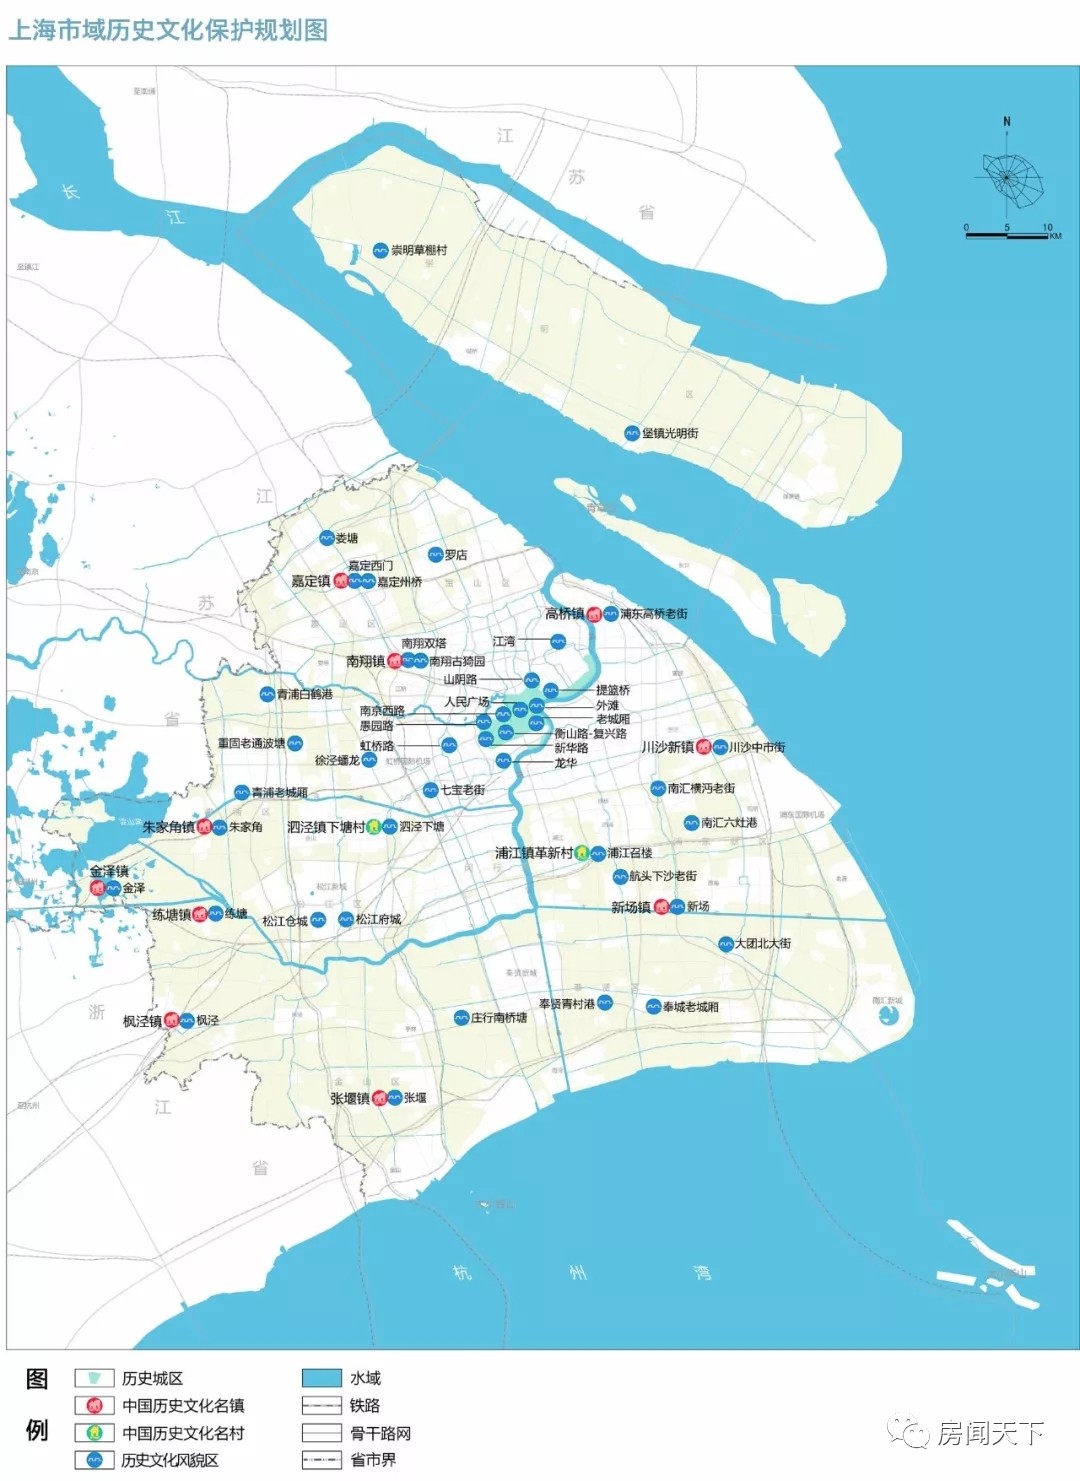 上海地铁2050年规划图,上海地铁2030年规划图,上海地铁2035